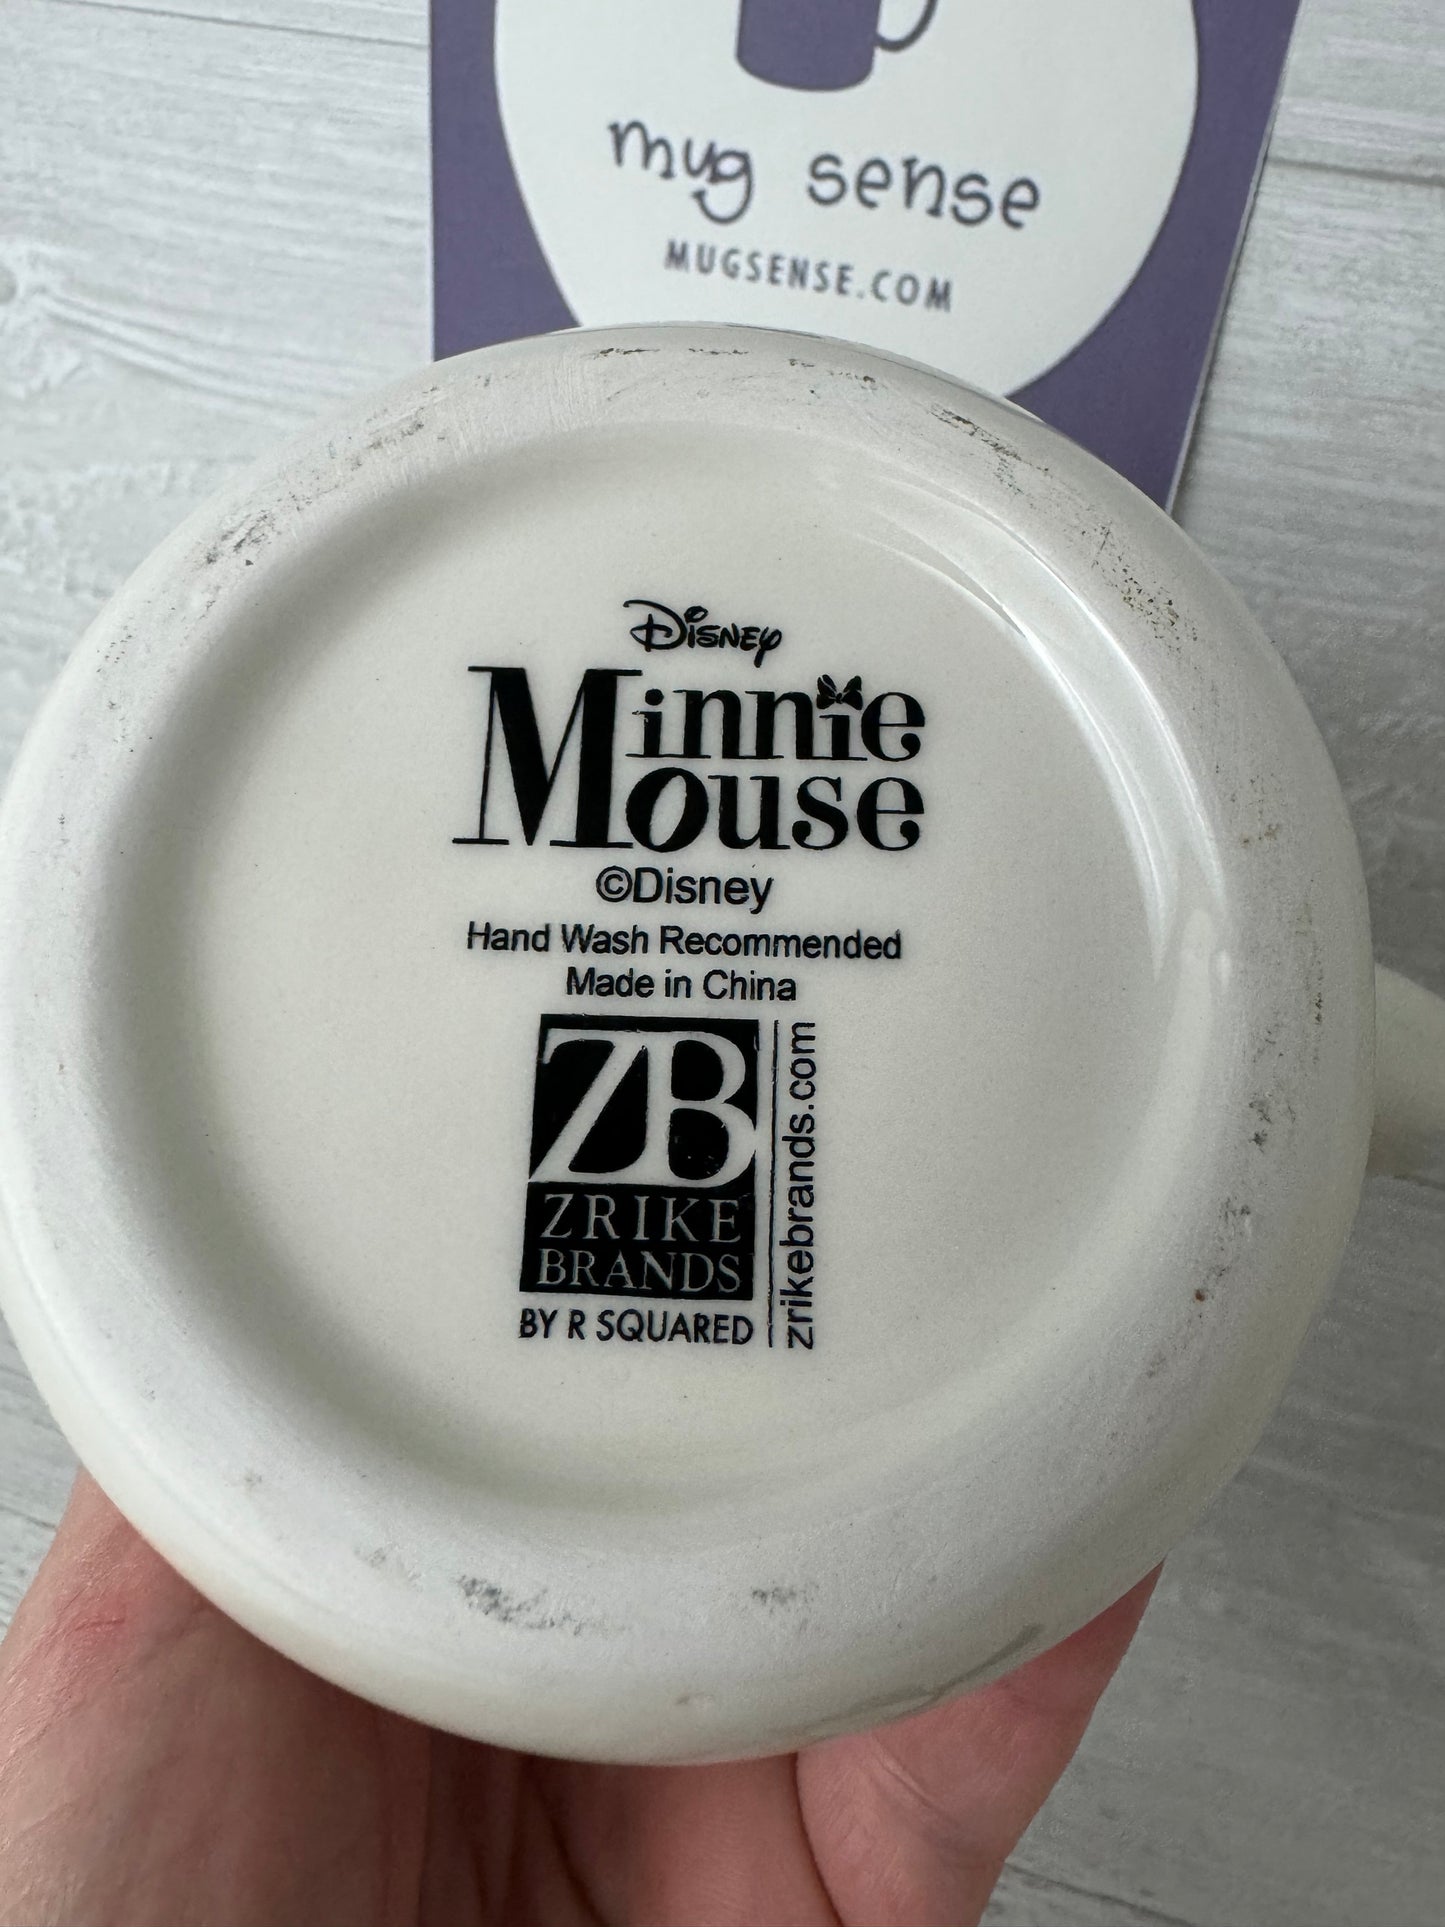 Disney's Minnie Mouse Christmas Mug Topper – Mug Sense